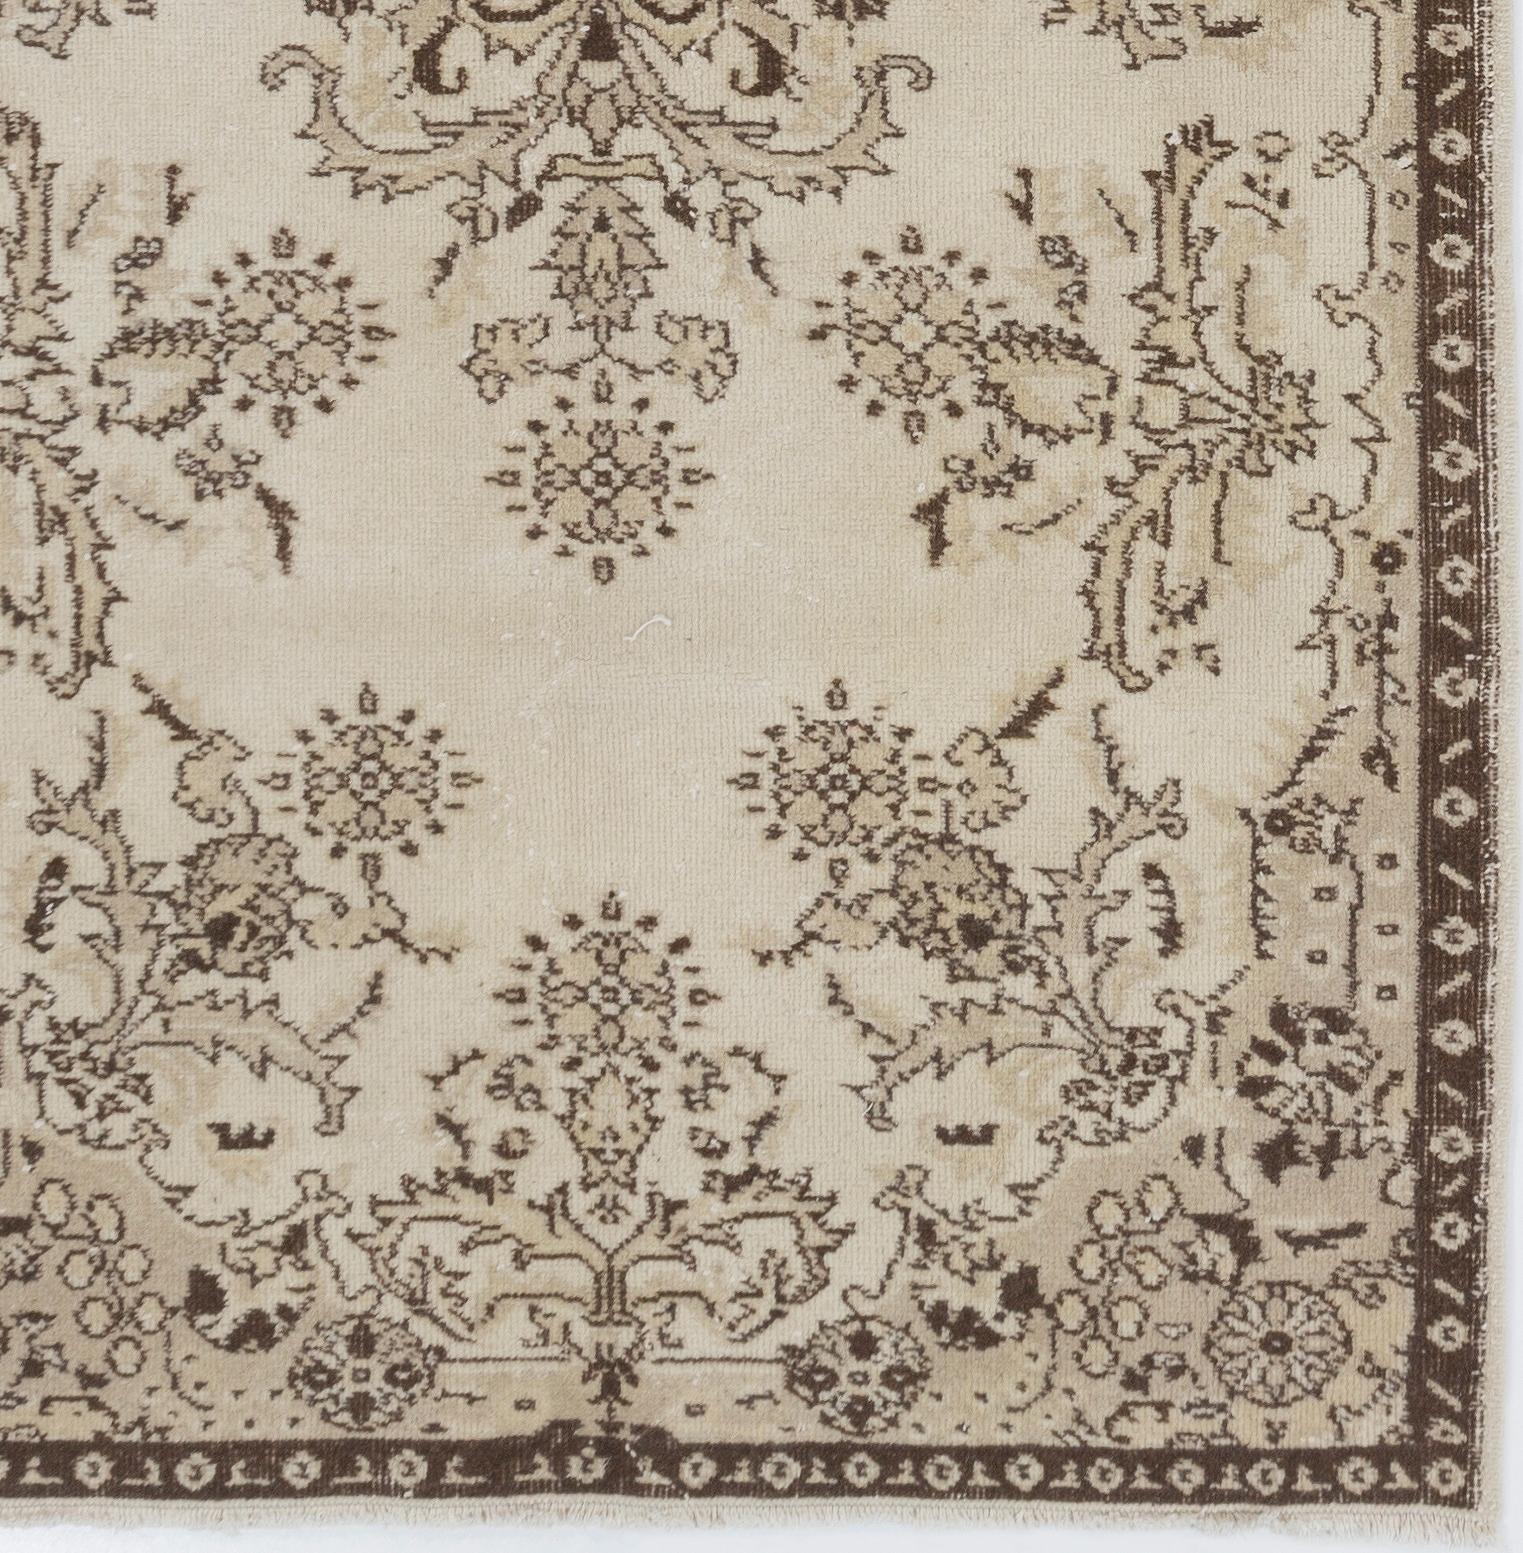 Turkish Handmade Floral Garden Design Faded Accent Rug, Vintage Neutral Carpet For Sale